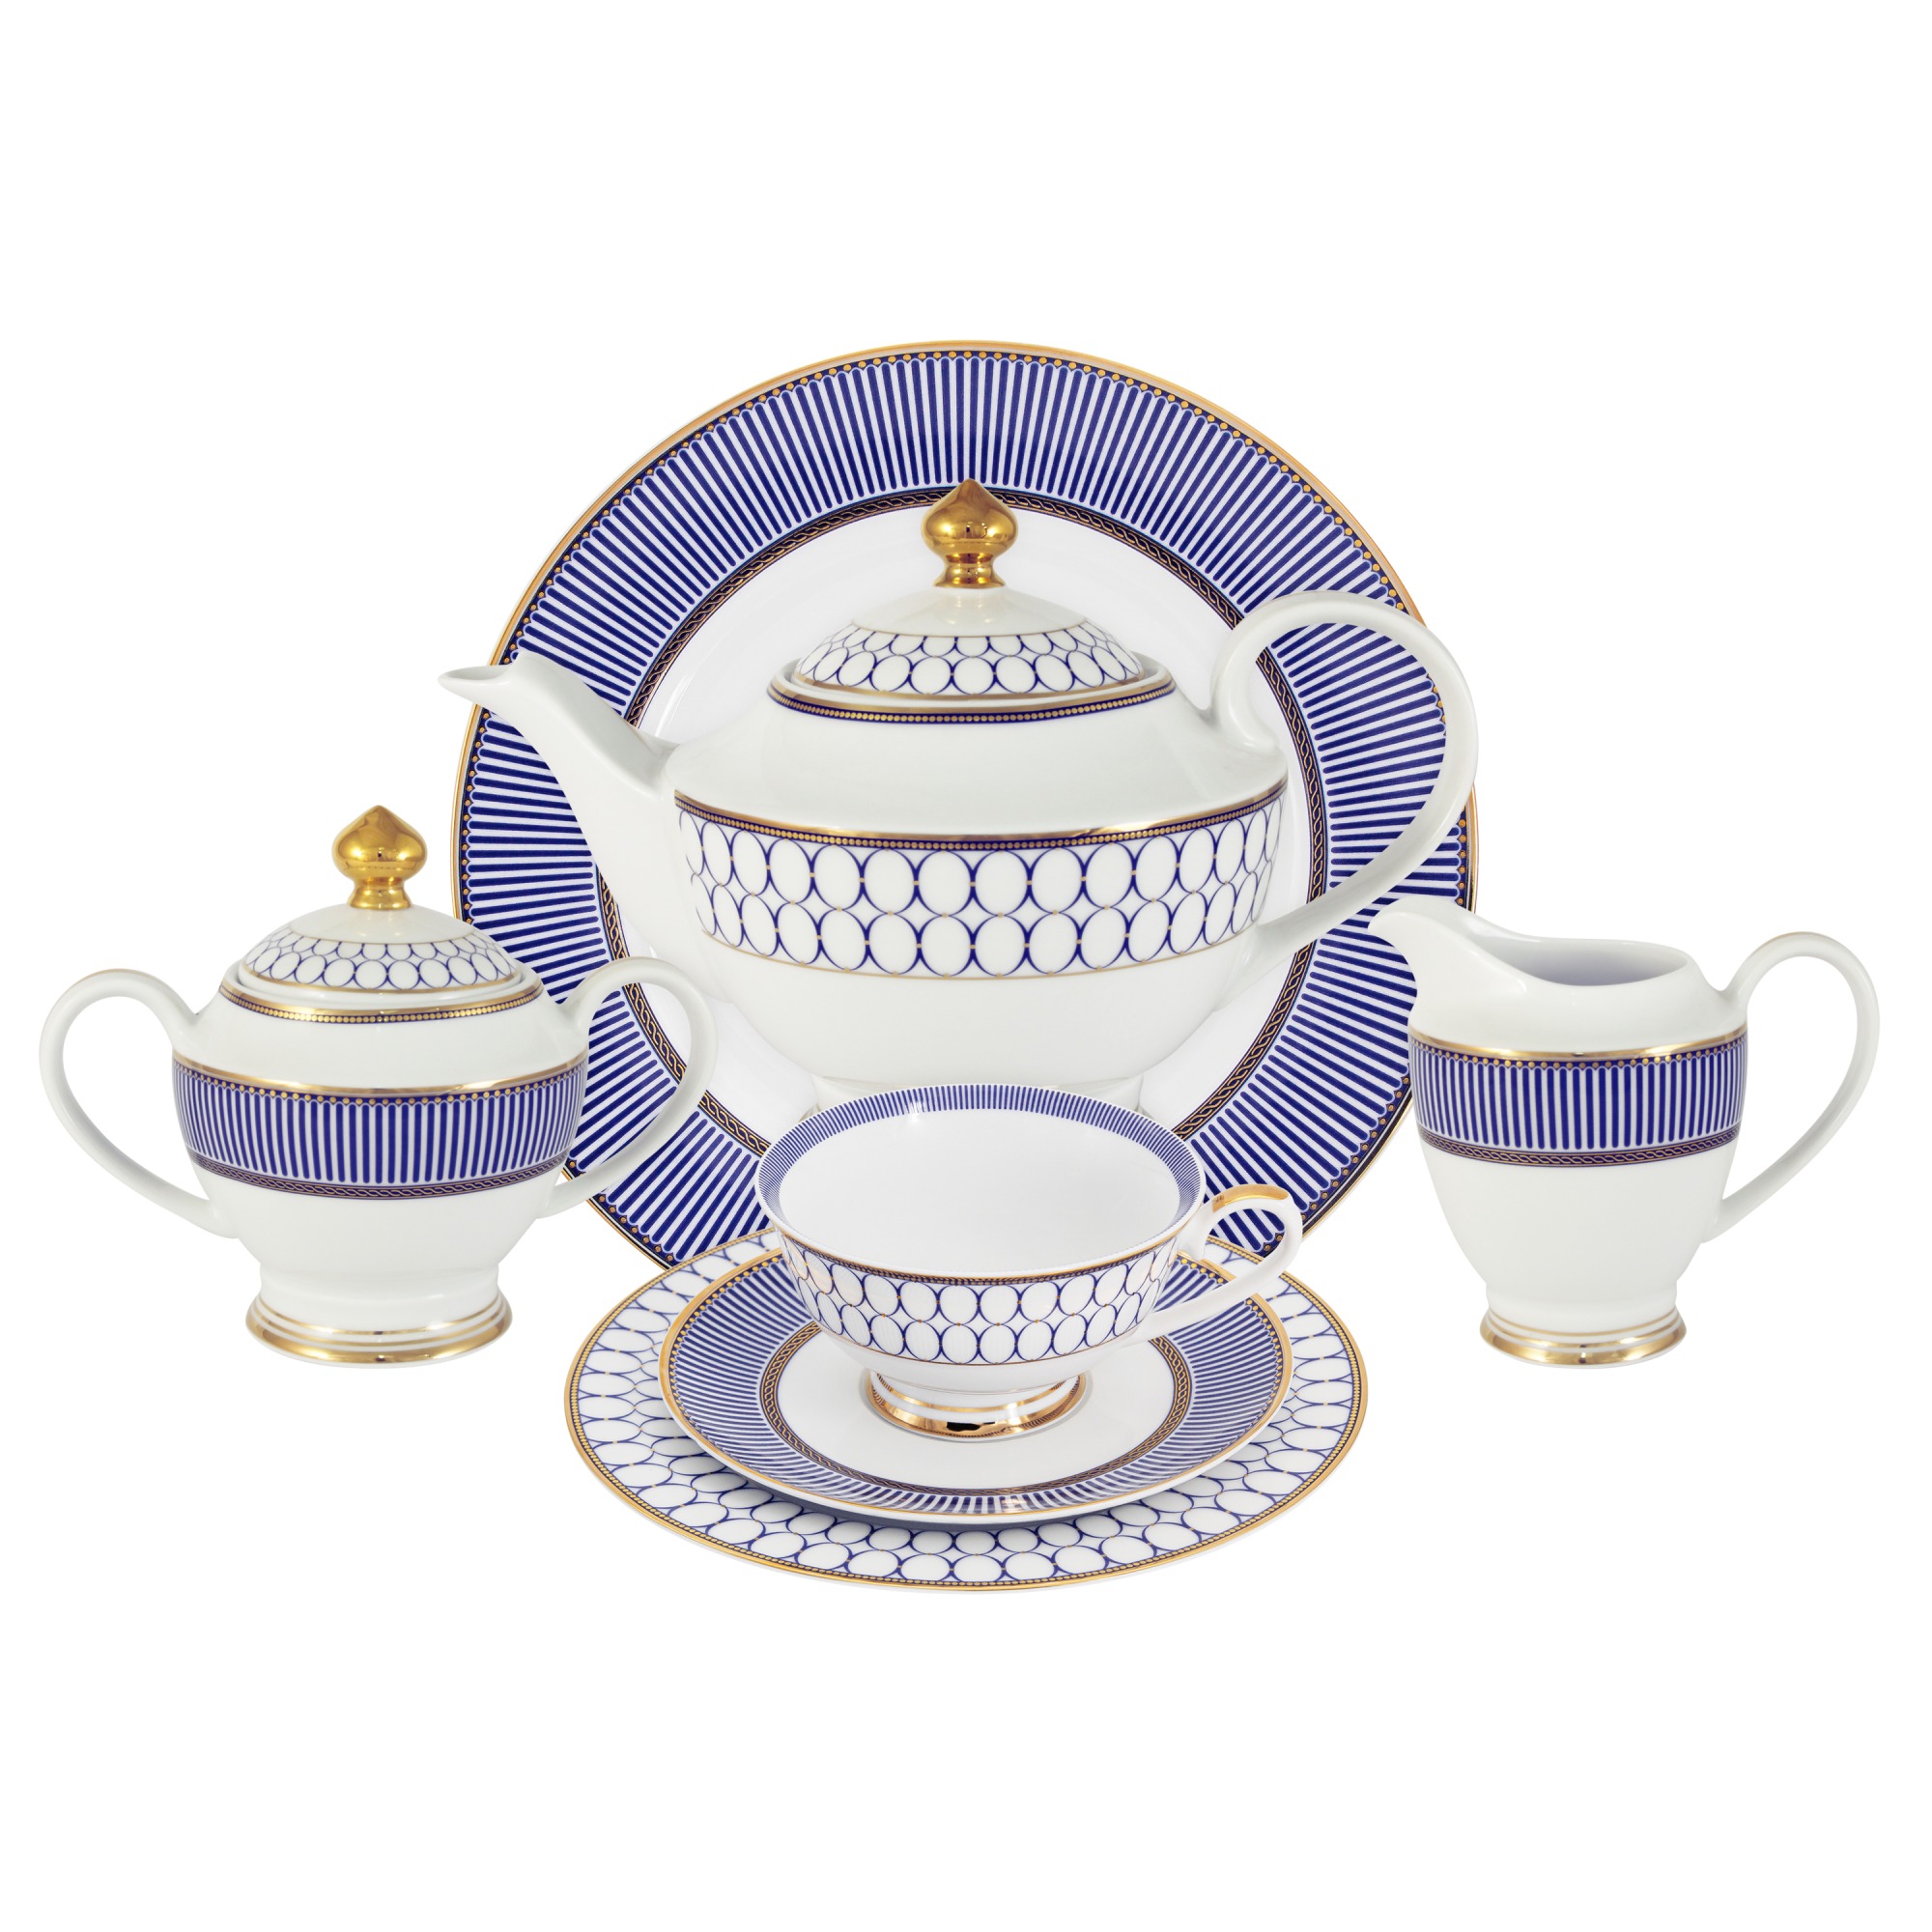 Сервиз чайный Anna Lafarg Midori Адмиралтейский 42 предмета 12 персон сервиз чайный anna lafarg королева анна 21 предмет на 6 персон